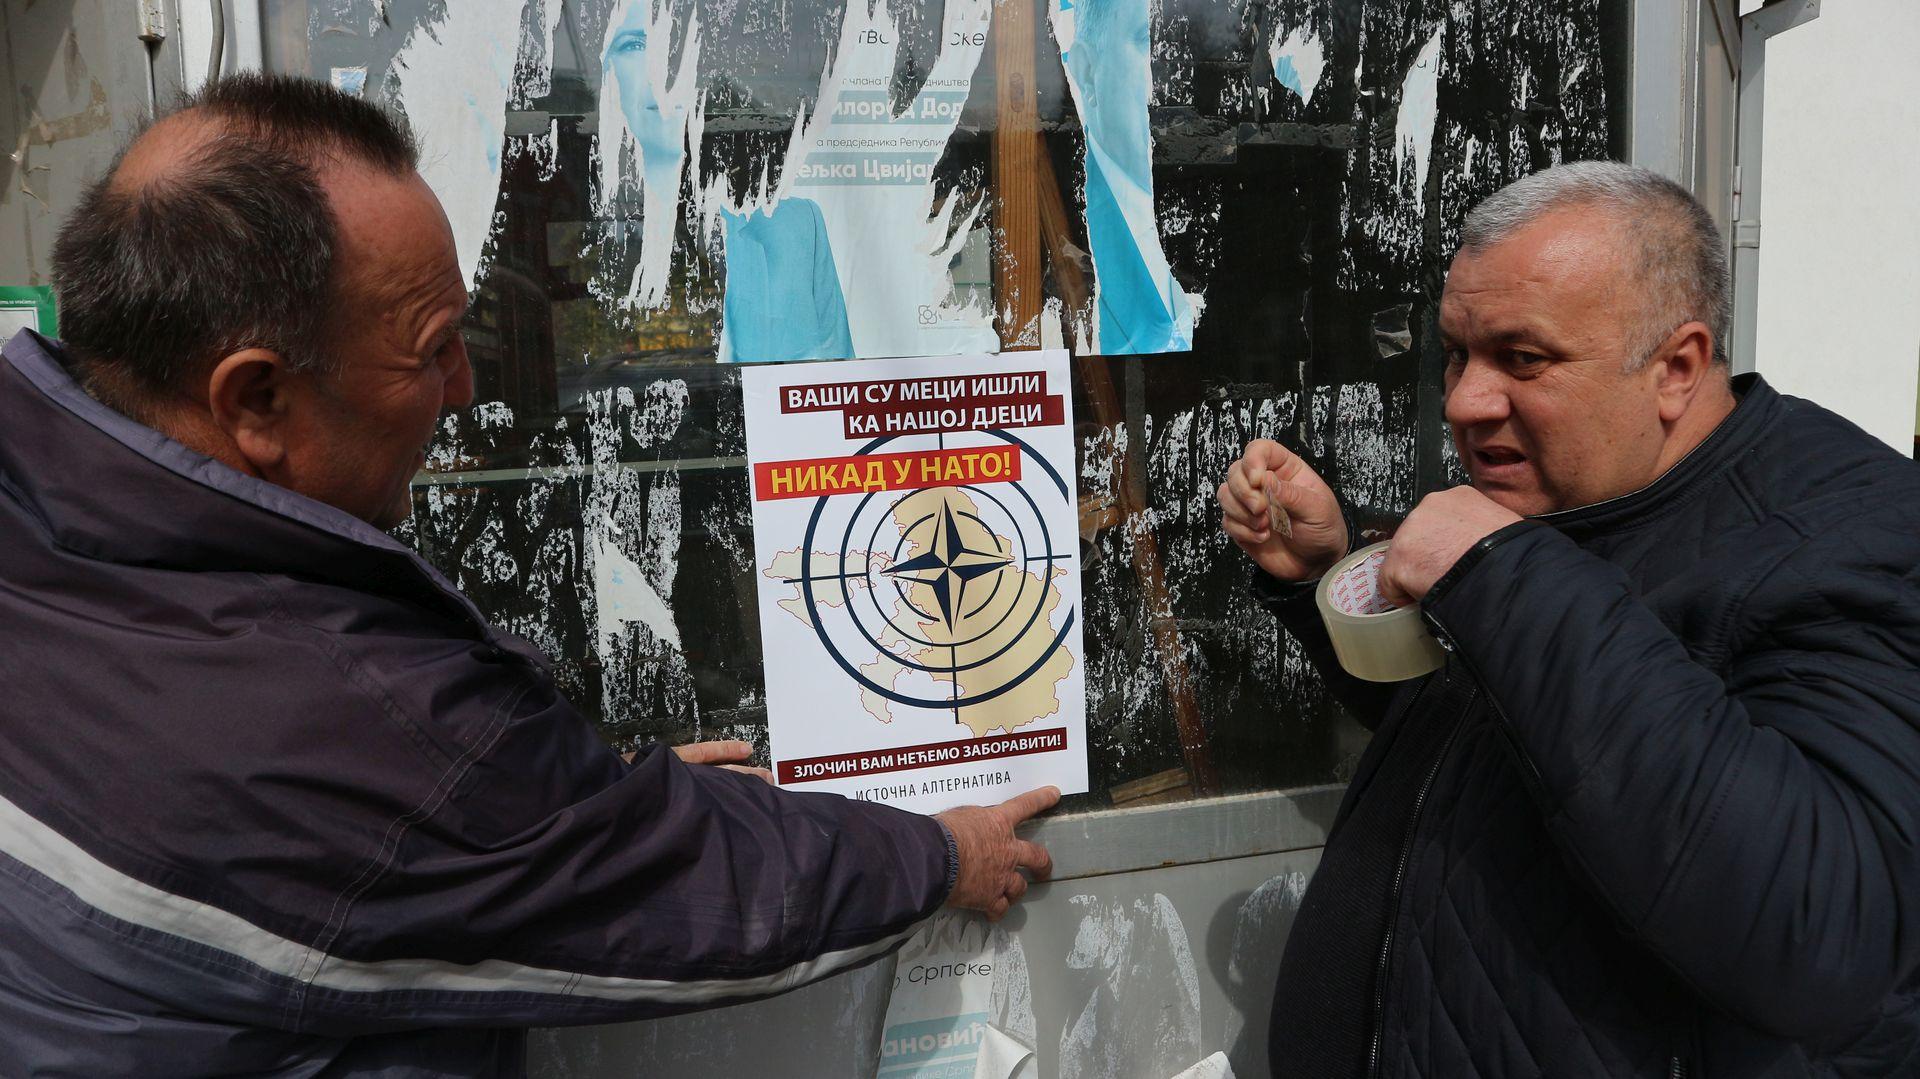 Lijepljenje plakata u Srebrenici - Avaz